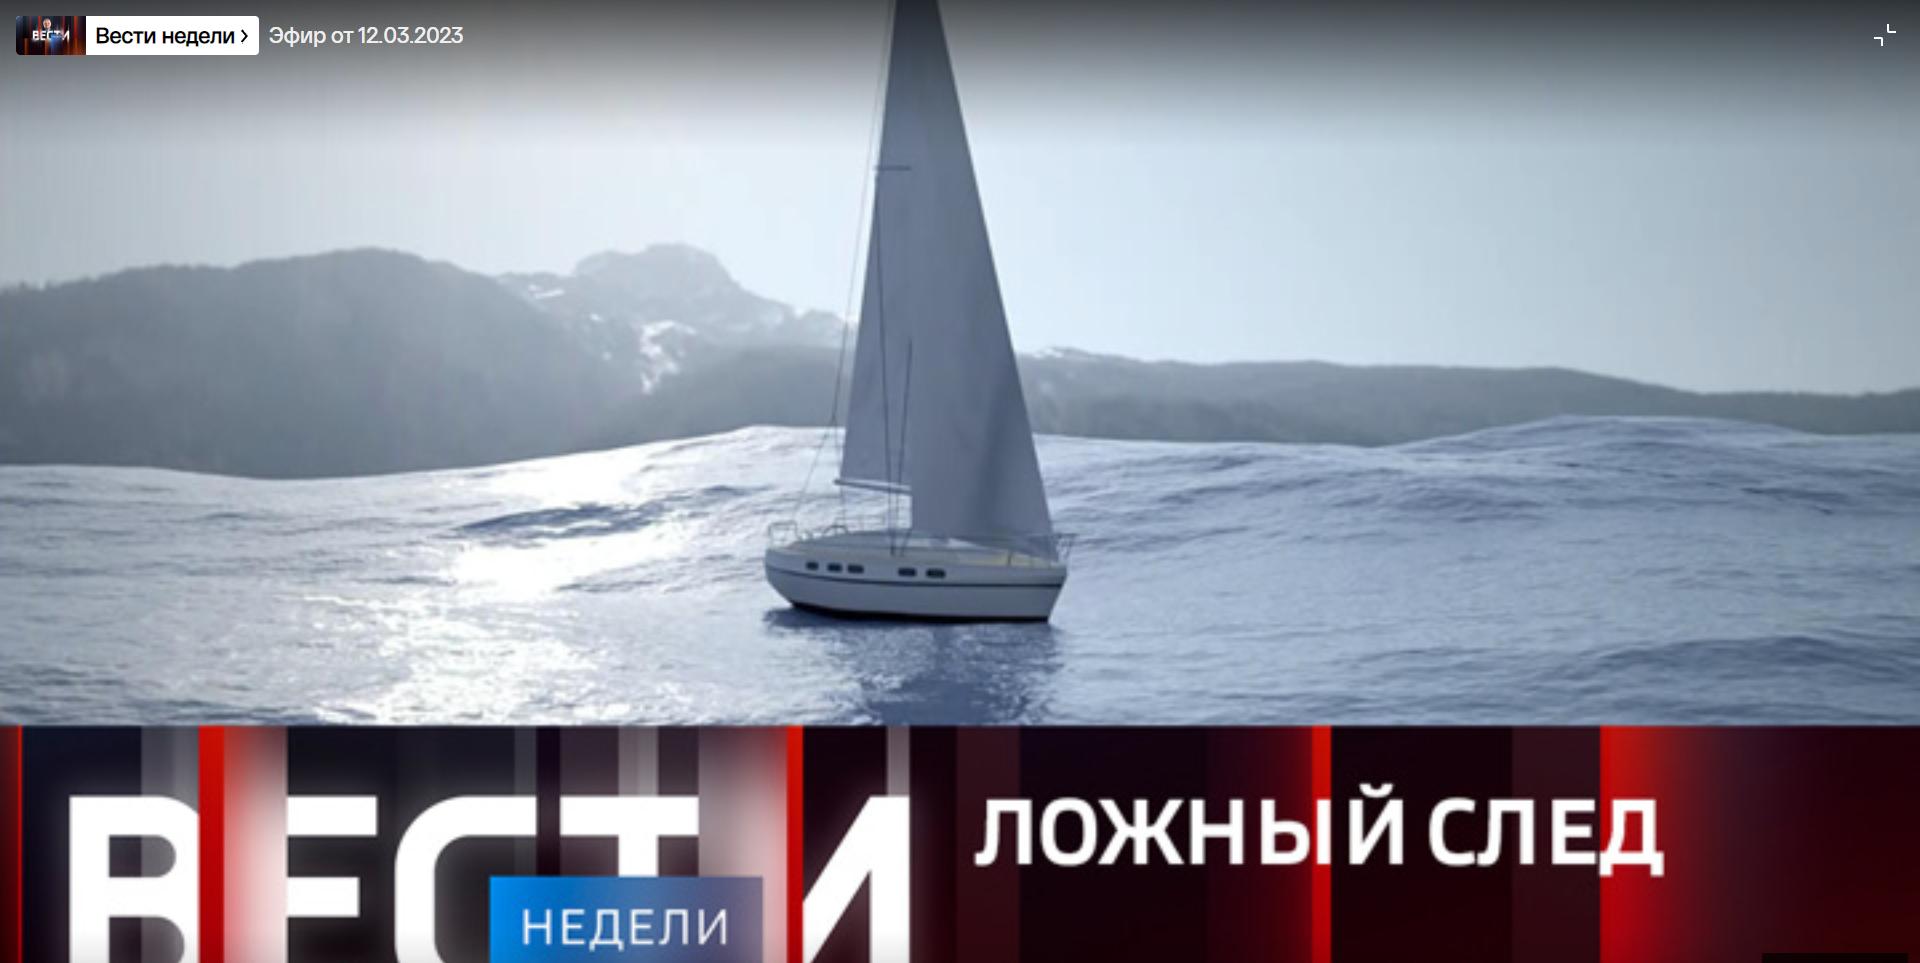 Czołówka programu telewizyjnego: zjęcie jachtu na morzu i rosyjski napis "Kłamliwy ślad"